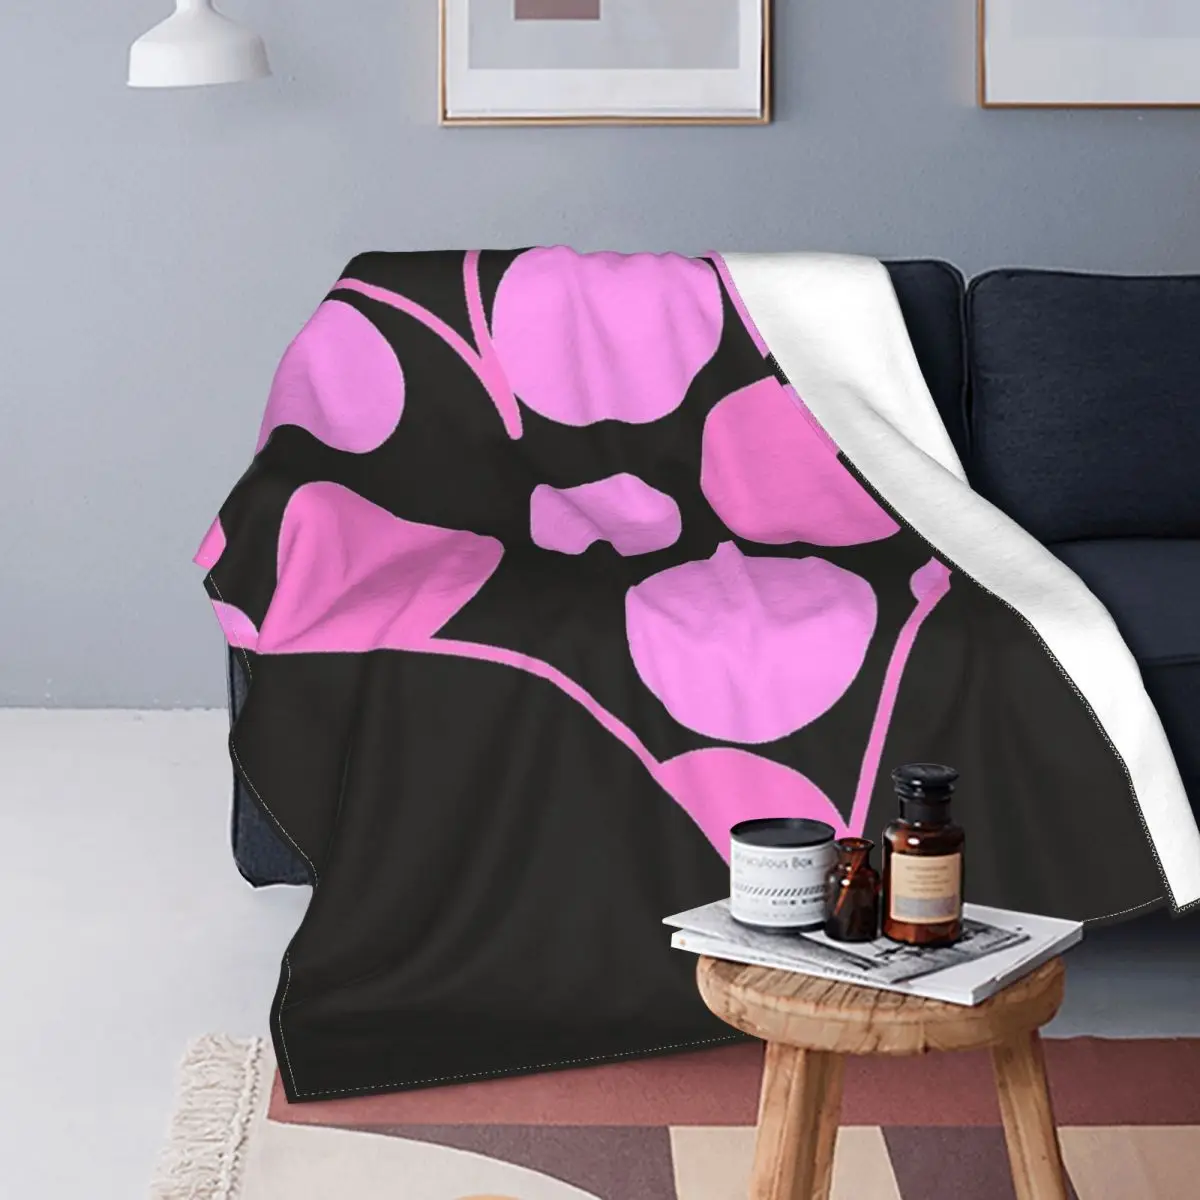 

Розовое одеяло в горошек в форме сердца, покрывало на кровать, полотенце в клетку из муслина, пляжное одеяло с капюшоном, плед на диван